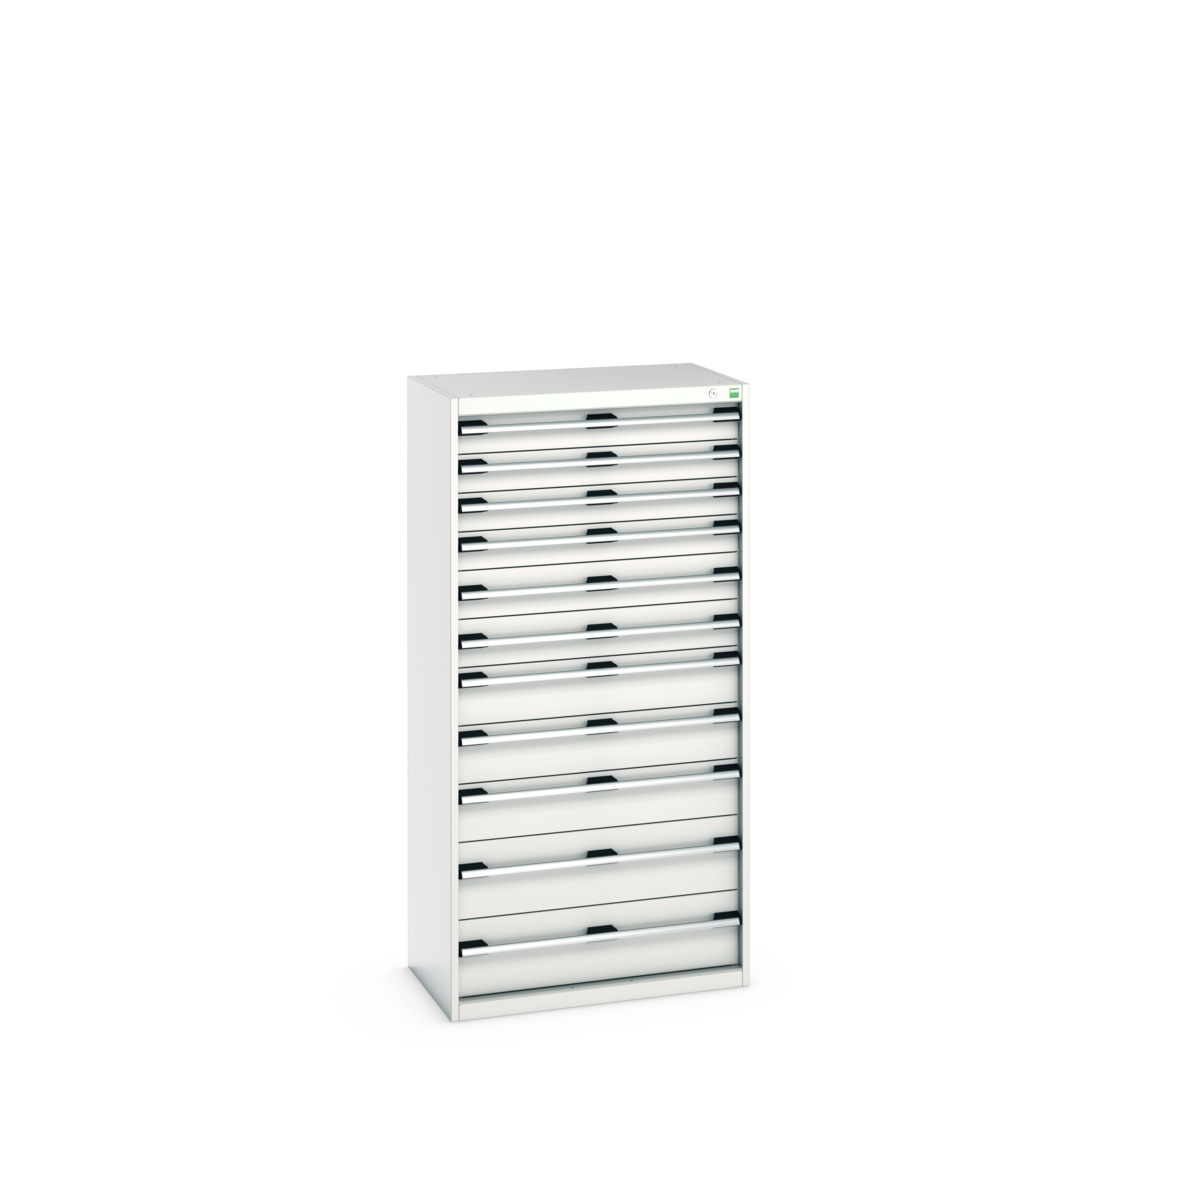 40012112.16V - cubio drawer cabinet